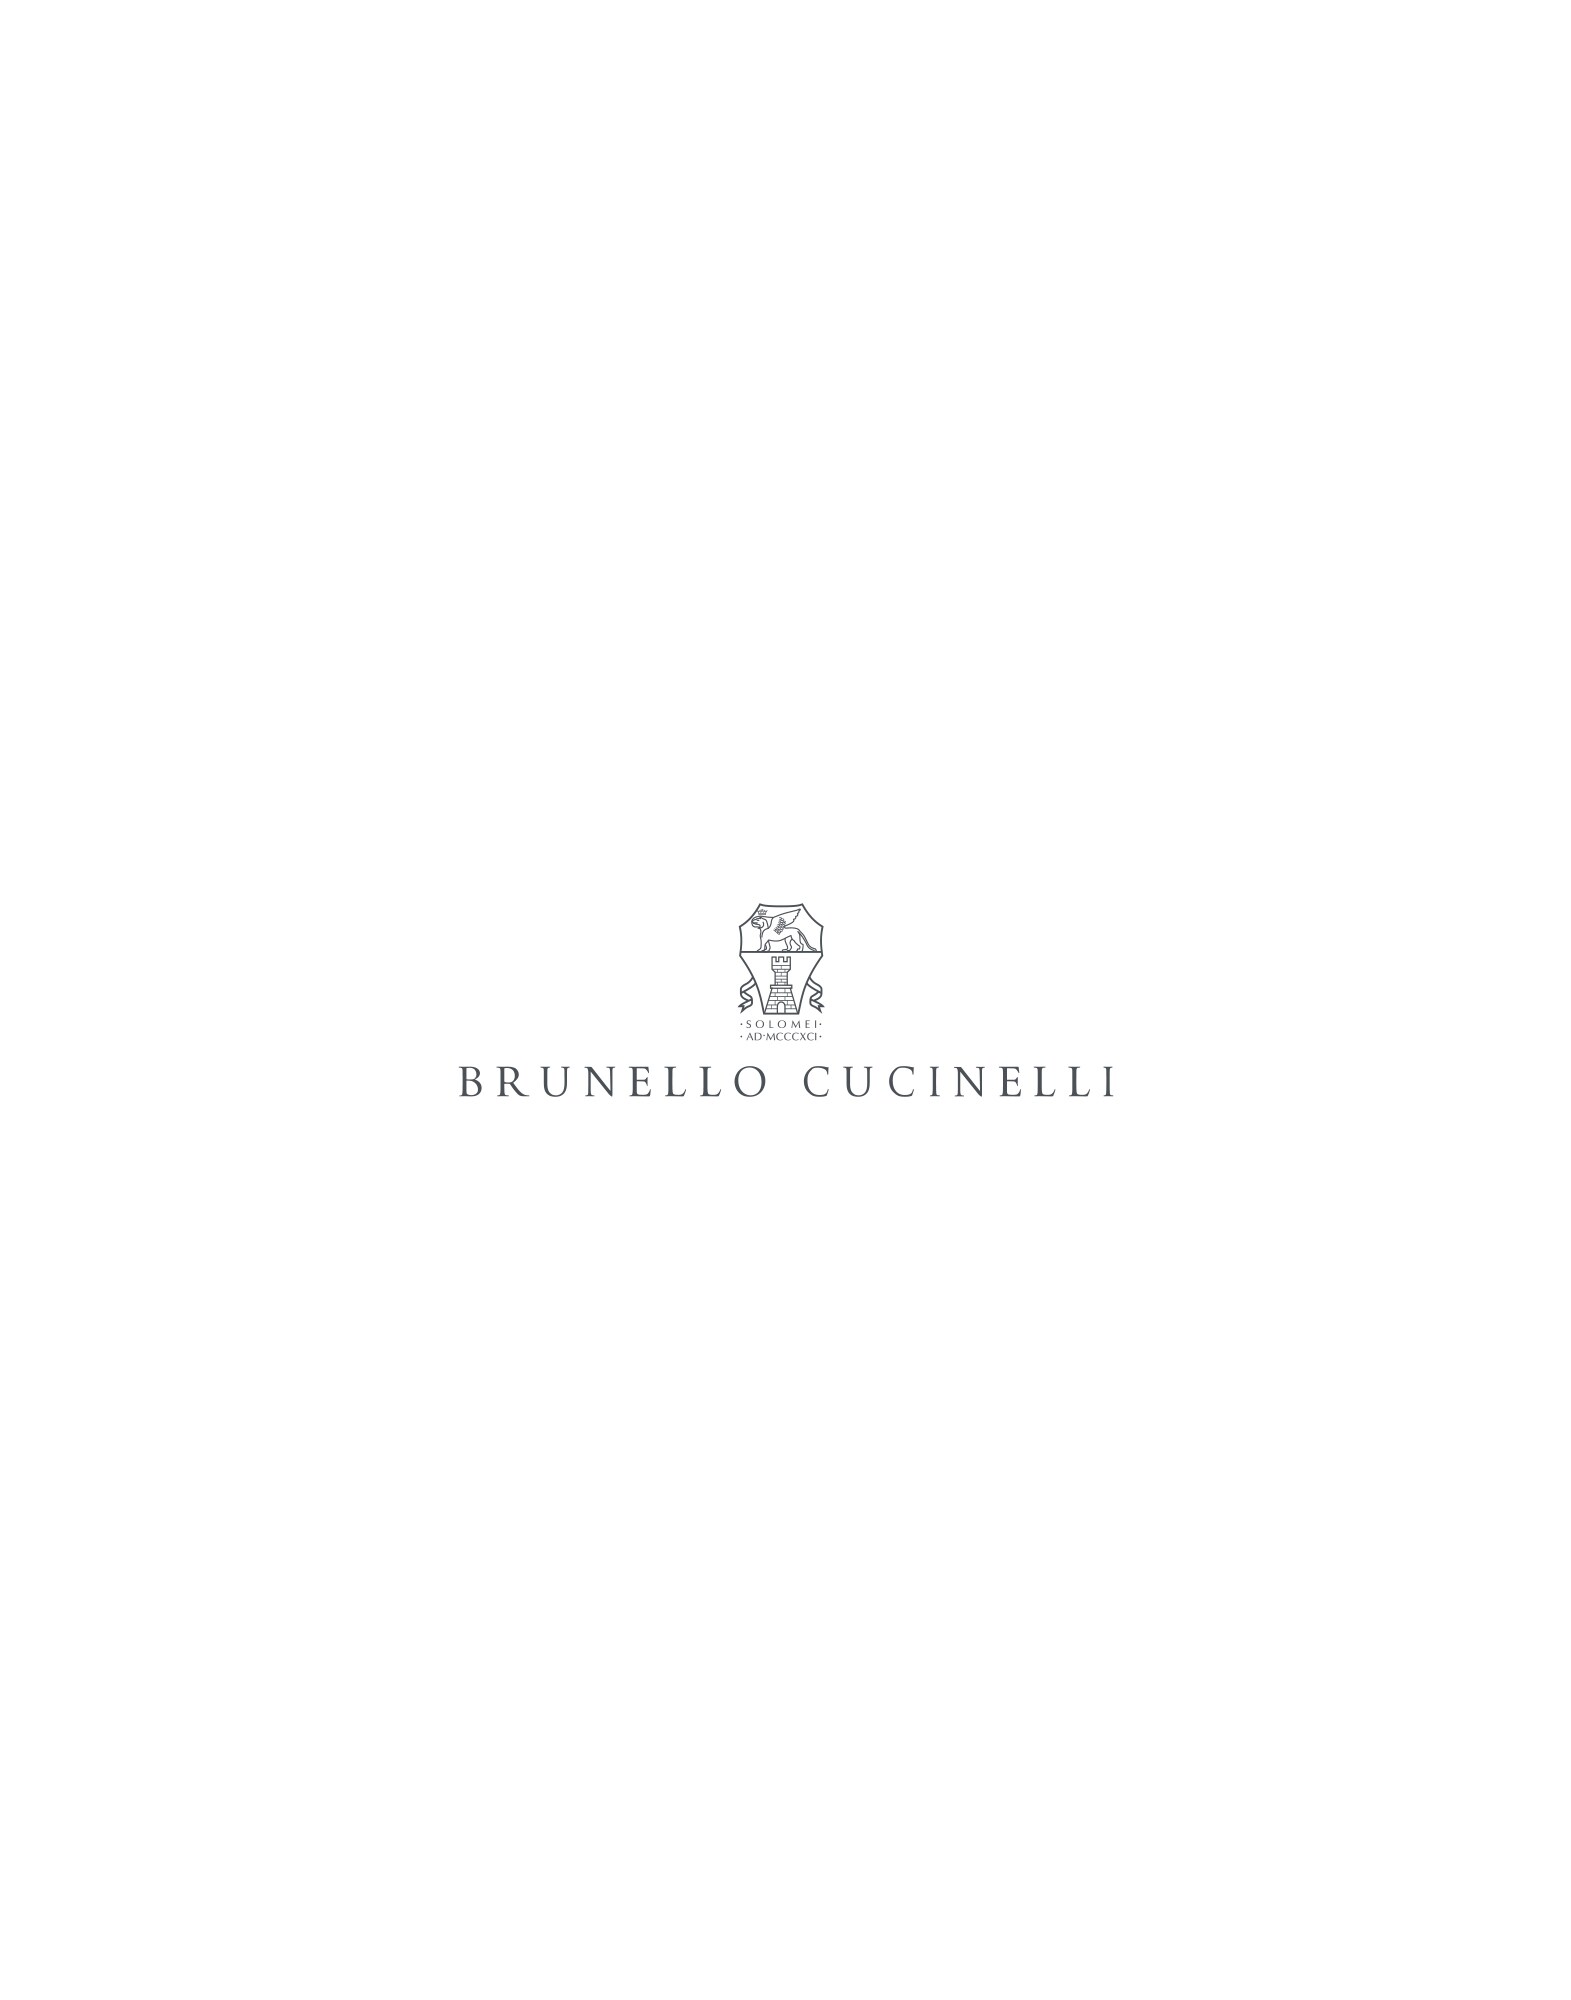 Blazer-style outerwear Ivory Man - Brunello Cucinelli